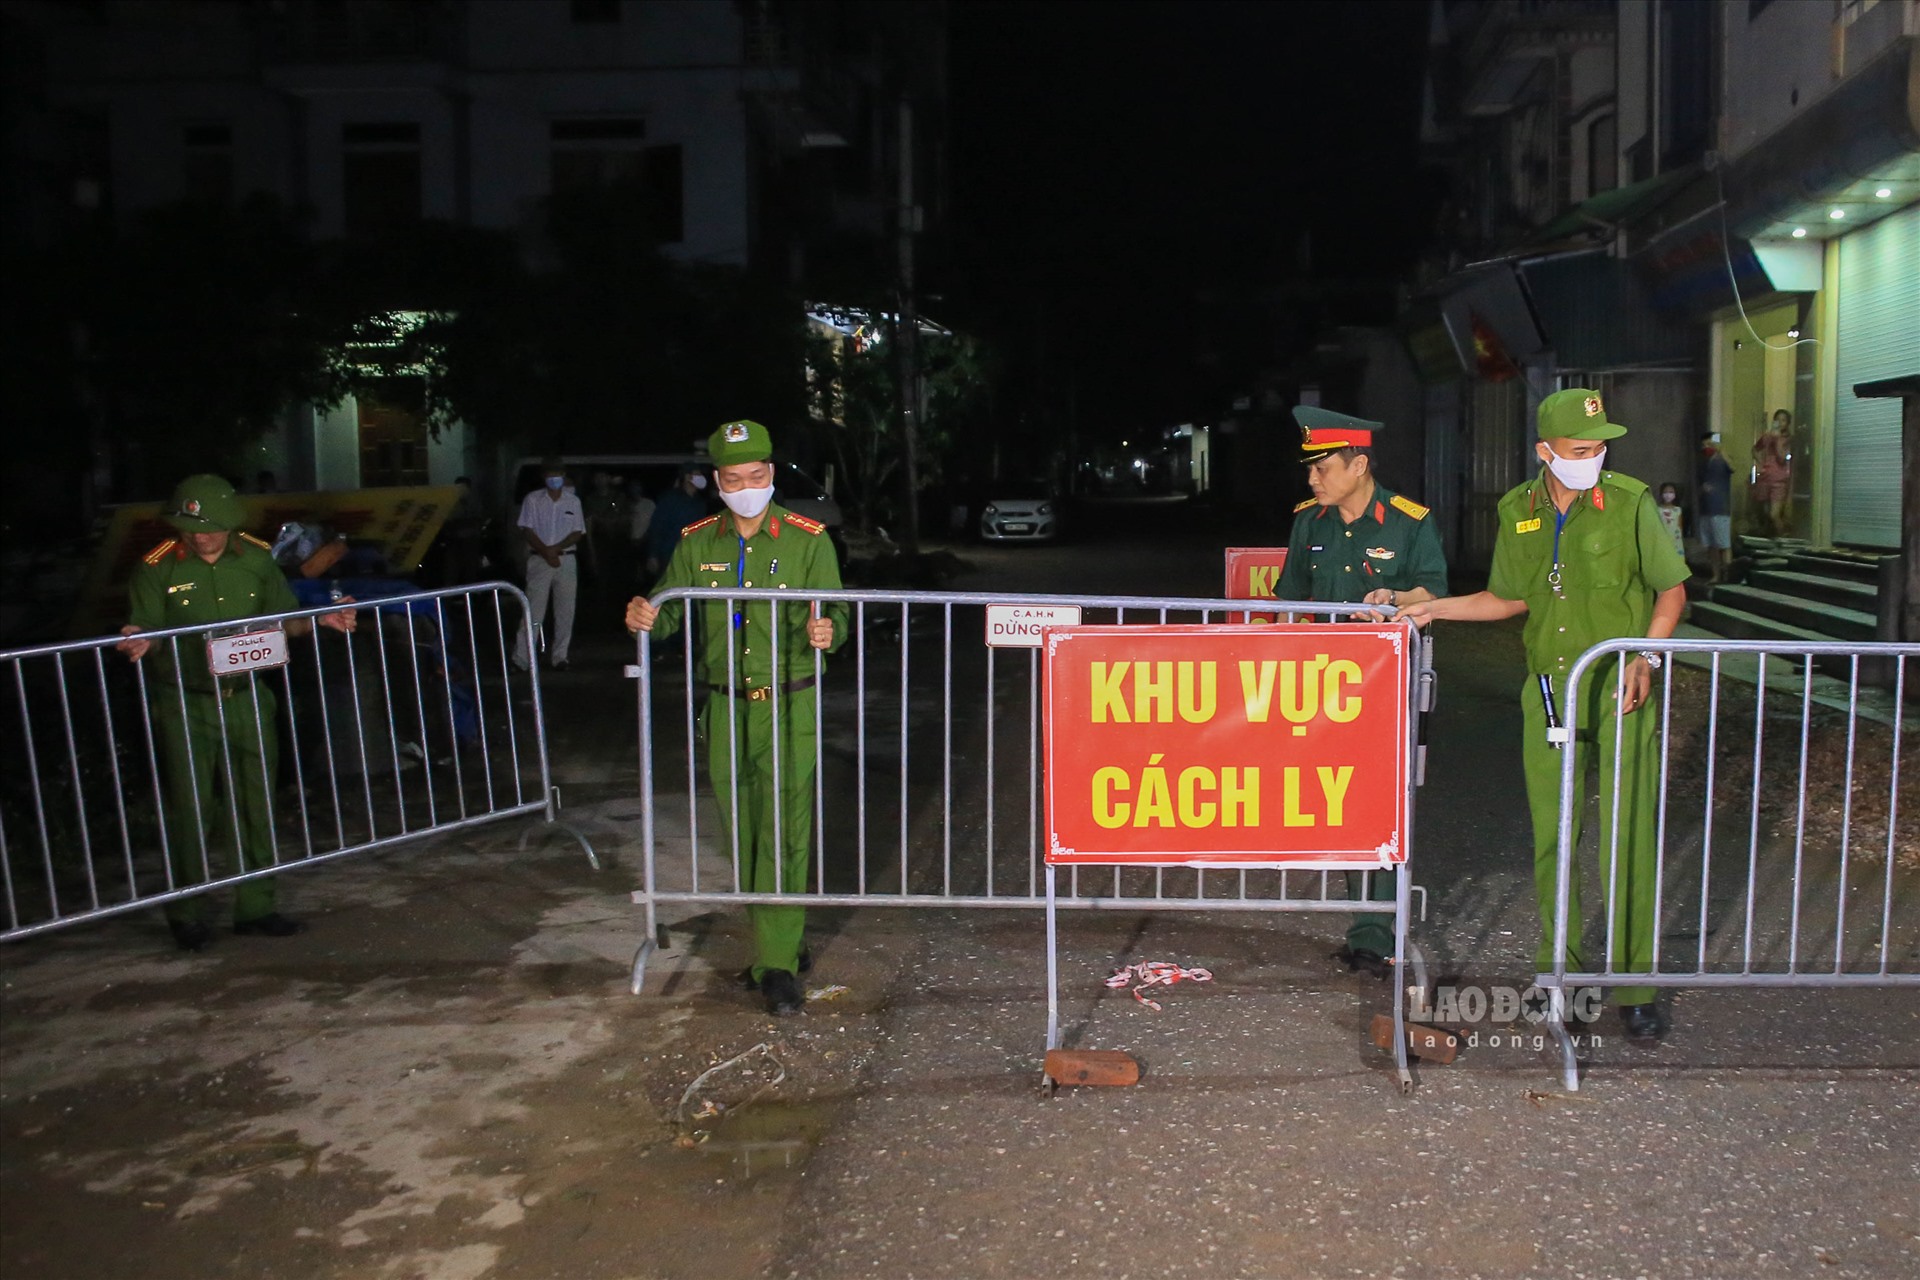 Trước đó, đúng 00h00 ngày 14.5 địa điểm cách ly cuối cùng của thành phố Hà Nội thôn Đông Cứu (xã Dũng Tiến, Thường Tín) được tháo dỡ cách ly, trong không khí hân hoan vui mừng của tất cả mọi người.